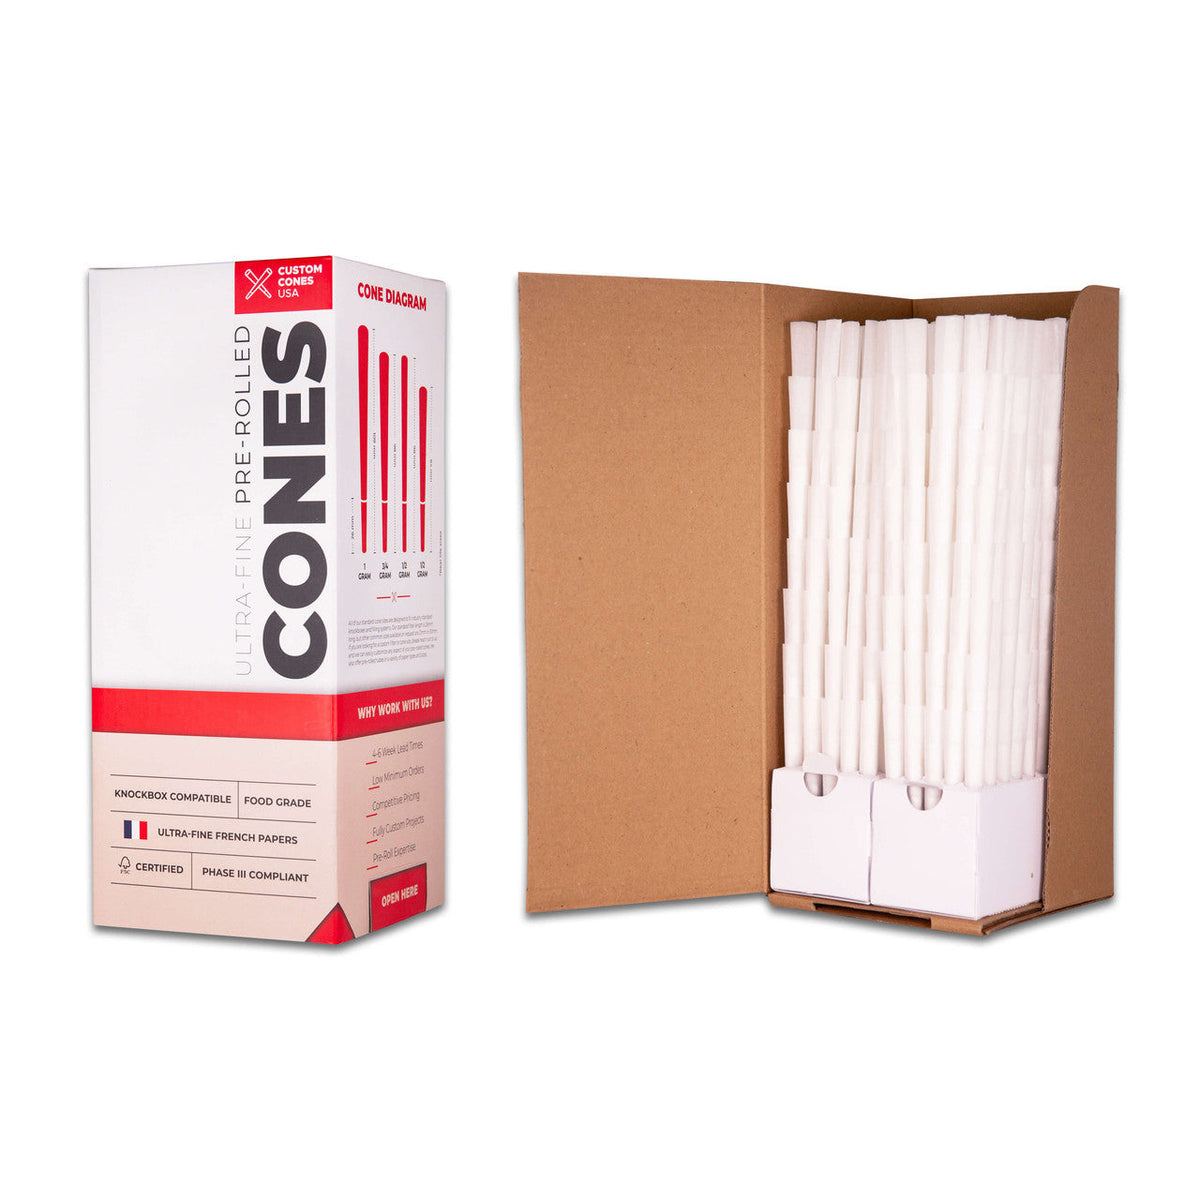 Custom Cones Custom Cones 98mm Reefer Pre-Rolled Cones - Refined White [800 Cones per Box]